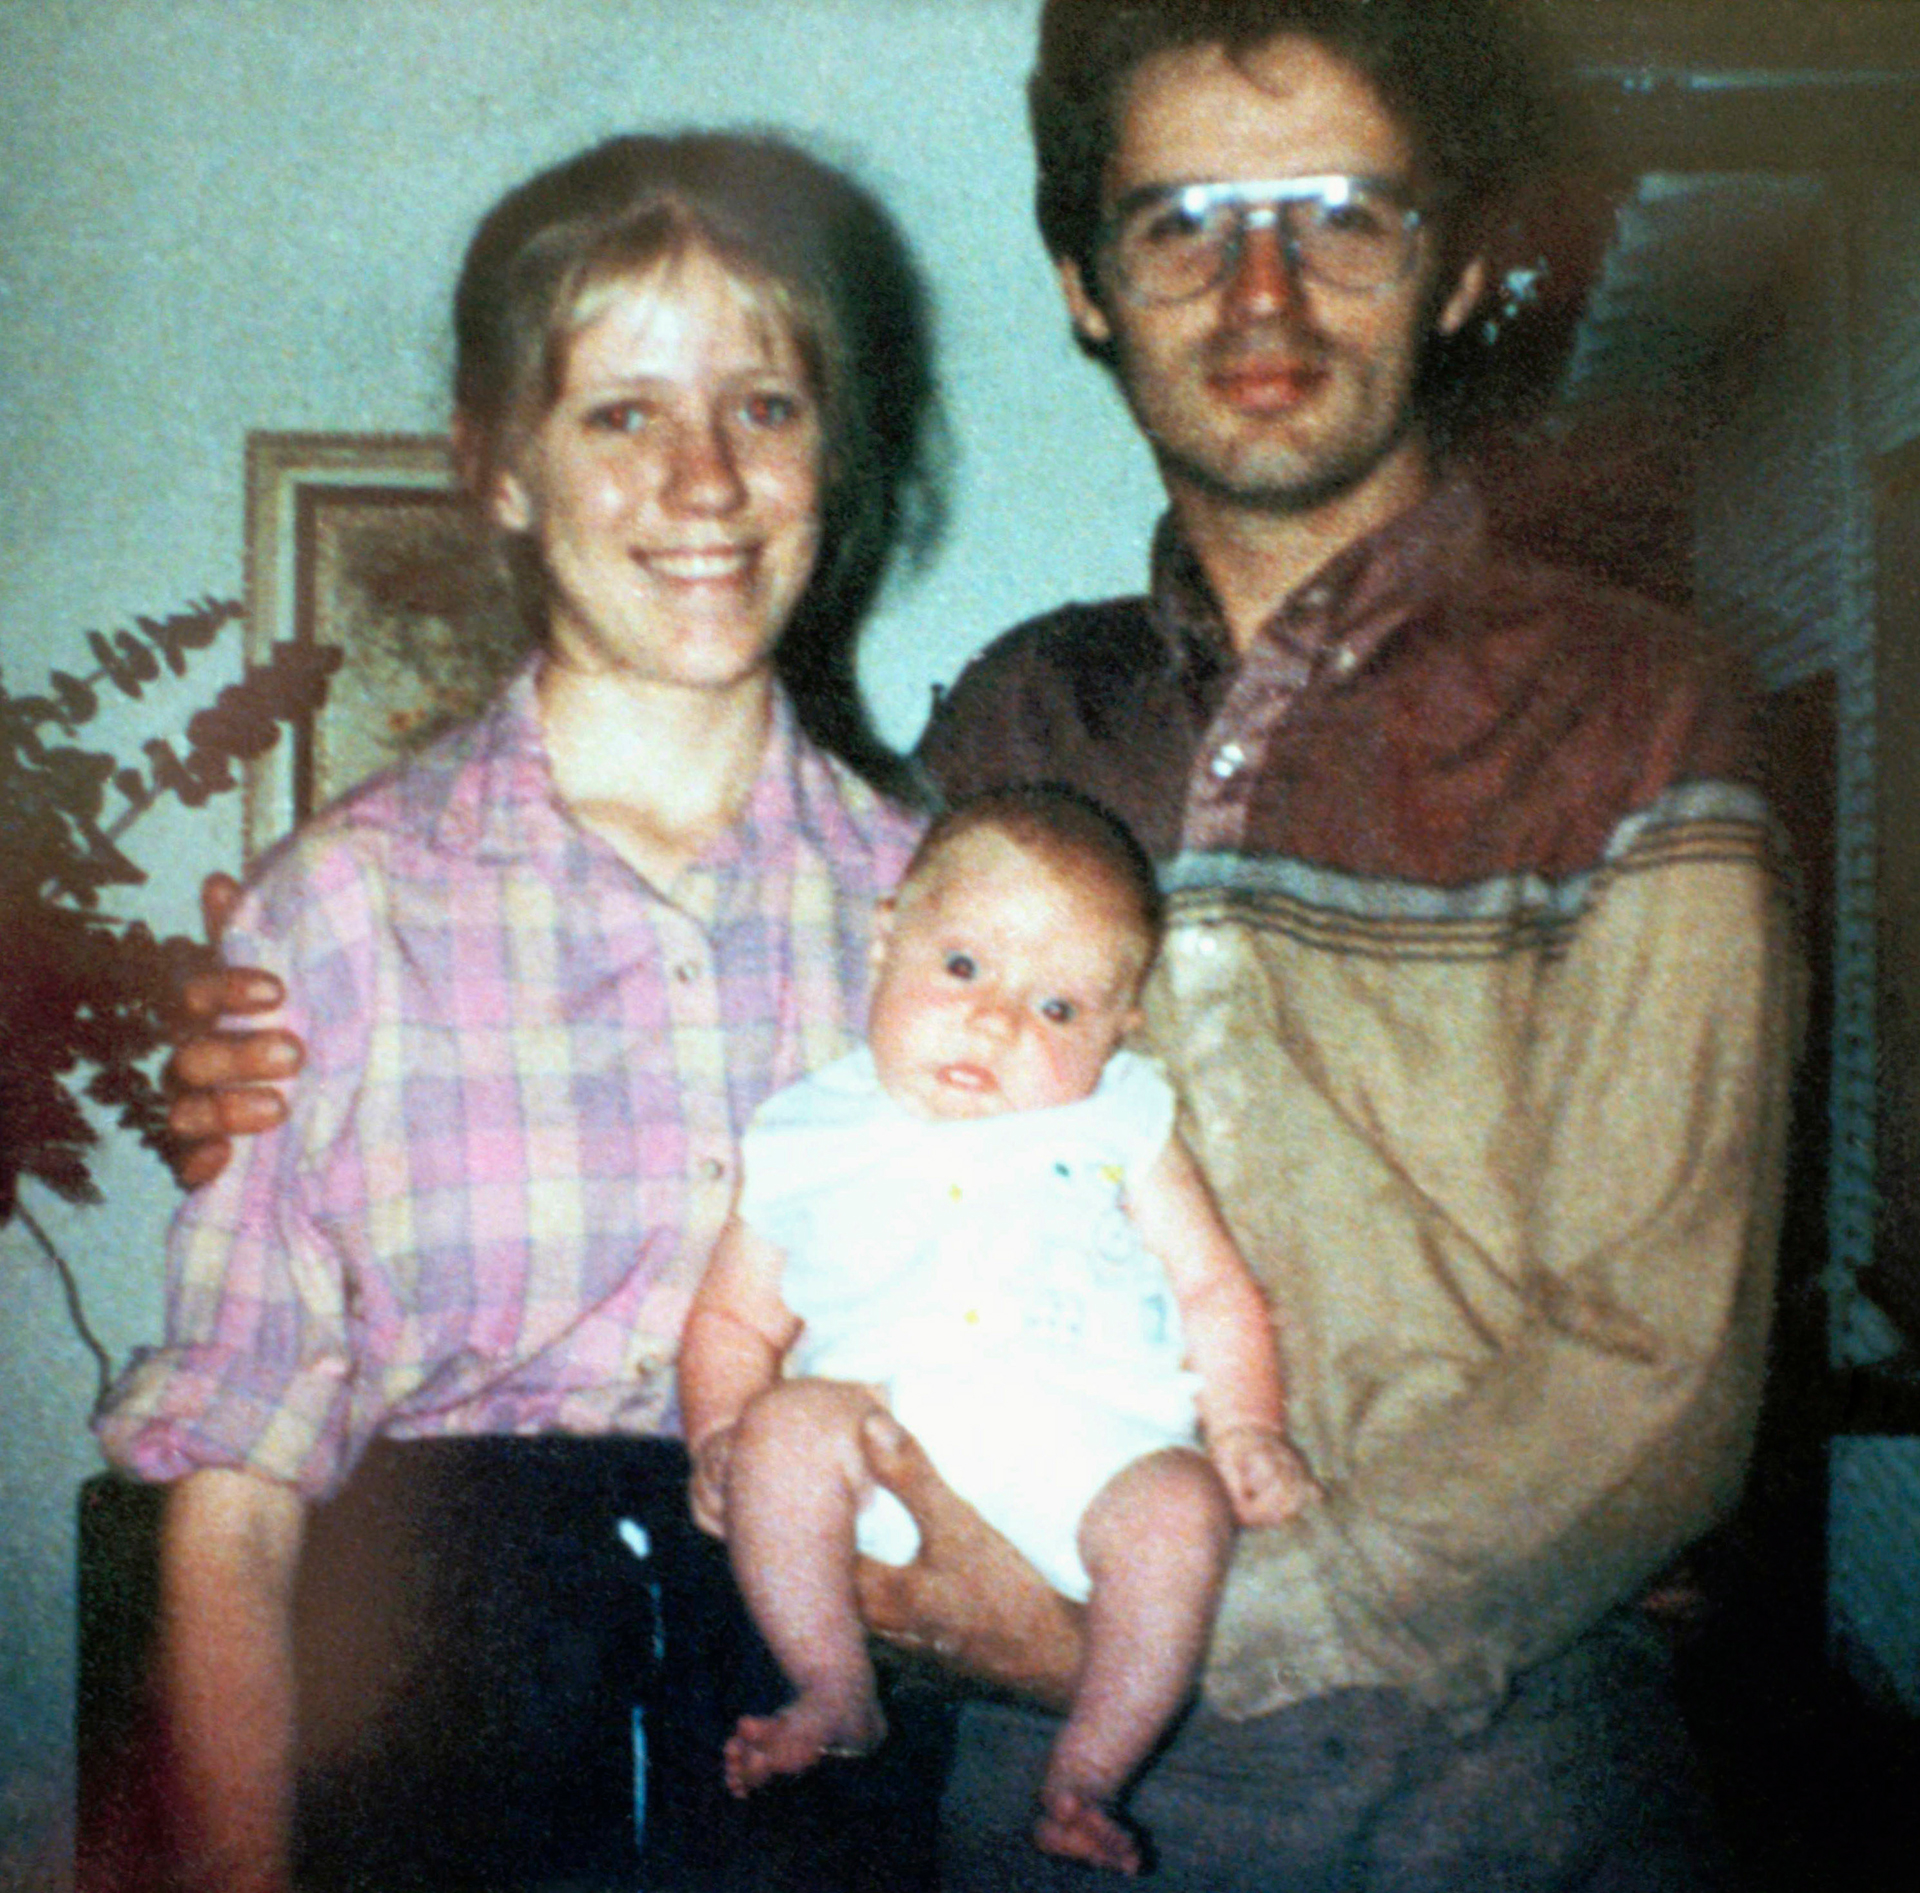 David Koresh con su esposa Rachel y su pequeño hijo Cyrus. Koresh decía que era el nuevo Mesías y que su semilla era "pura", por lo que mantuvo un harem de 15 mujeres con quienes tuvo hijos (AP Photo)